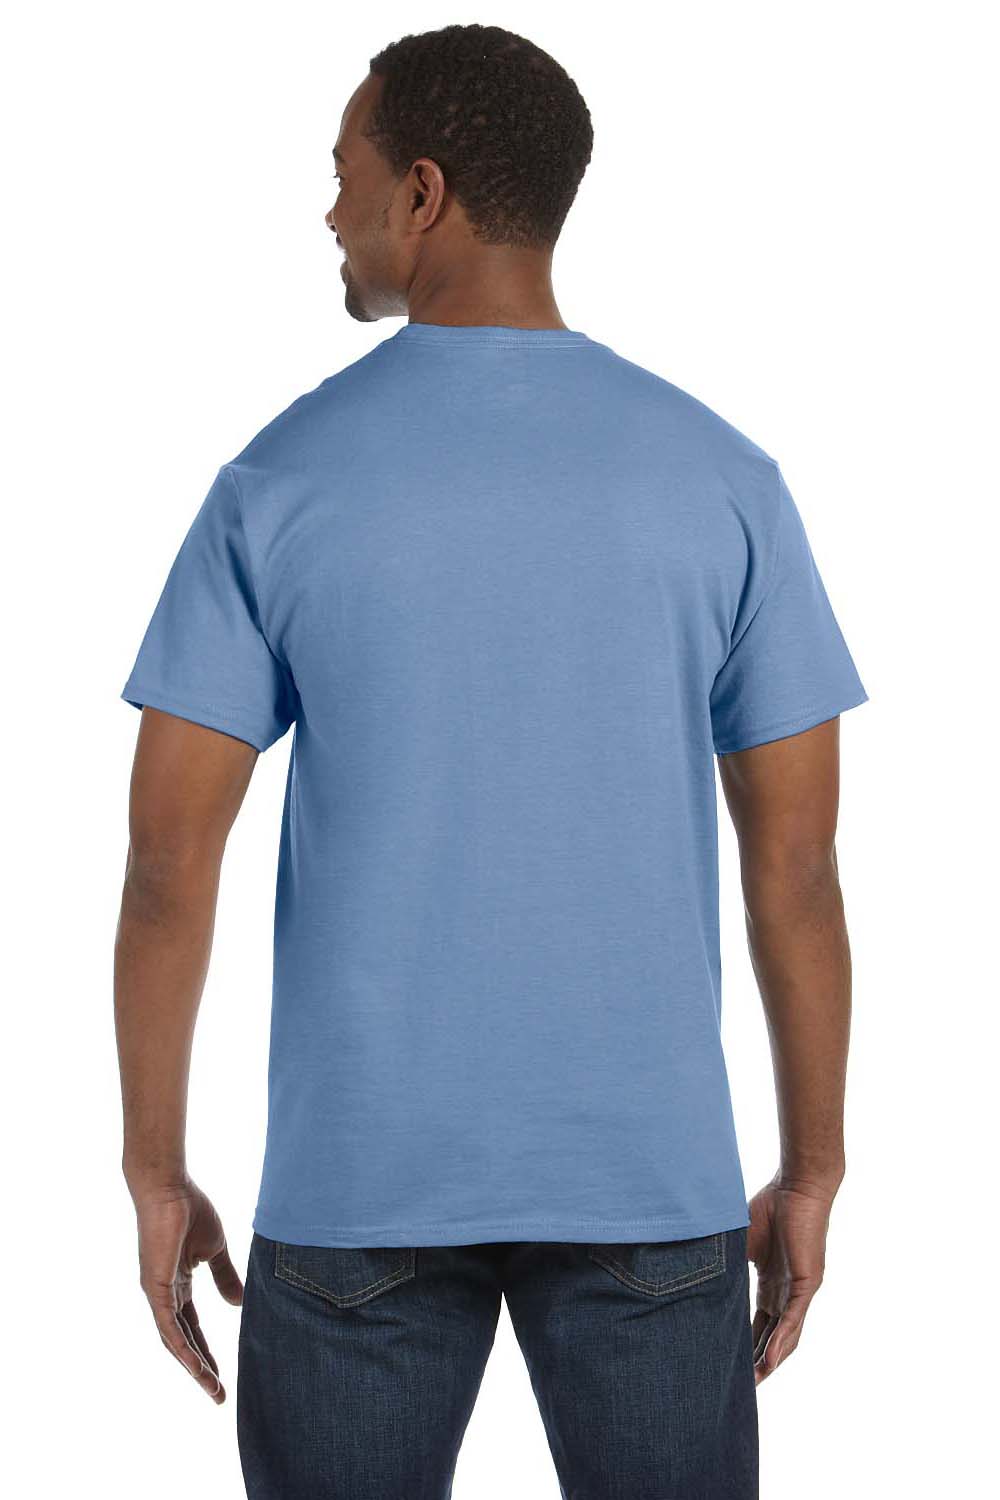 Jerzees 29M Mens Dri-Power Moisture Wicking Short Sleeve Crewneck T-Shirt Light Blue Back